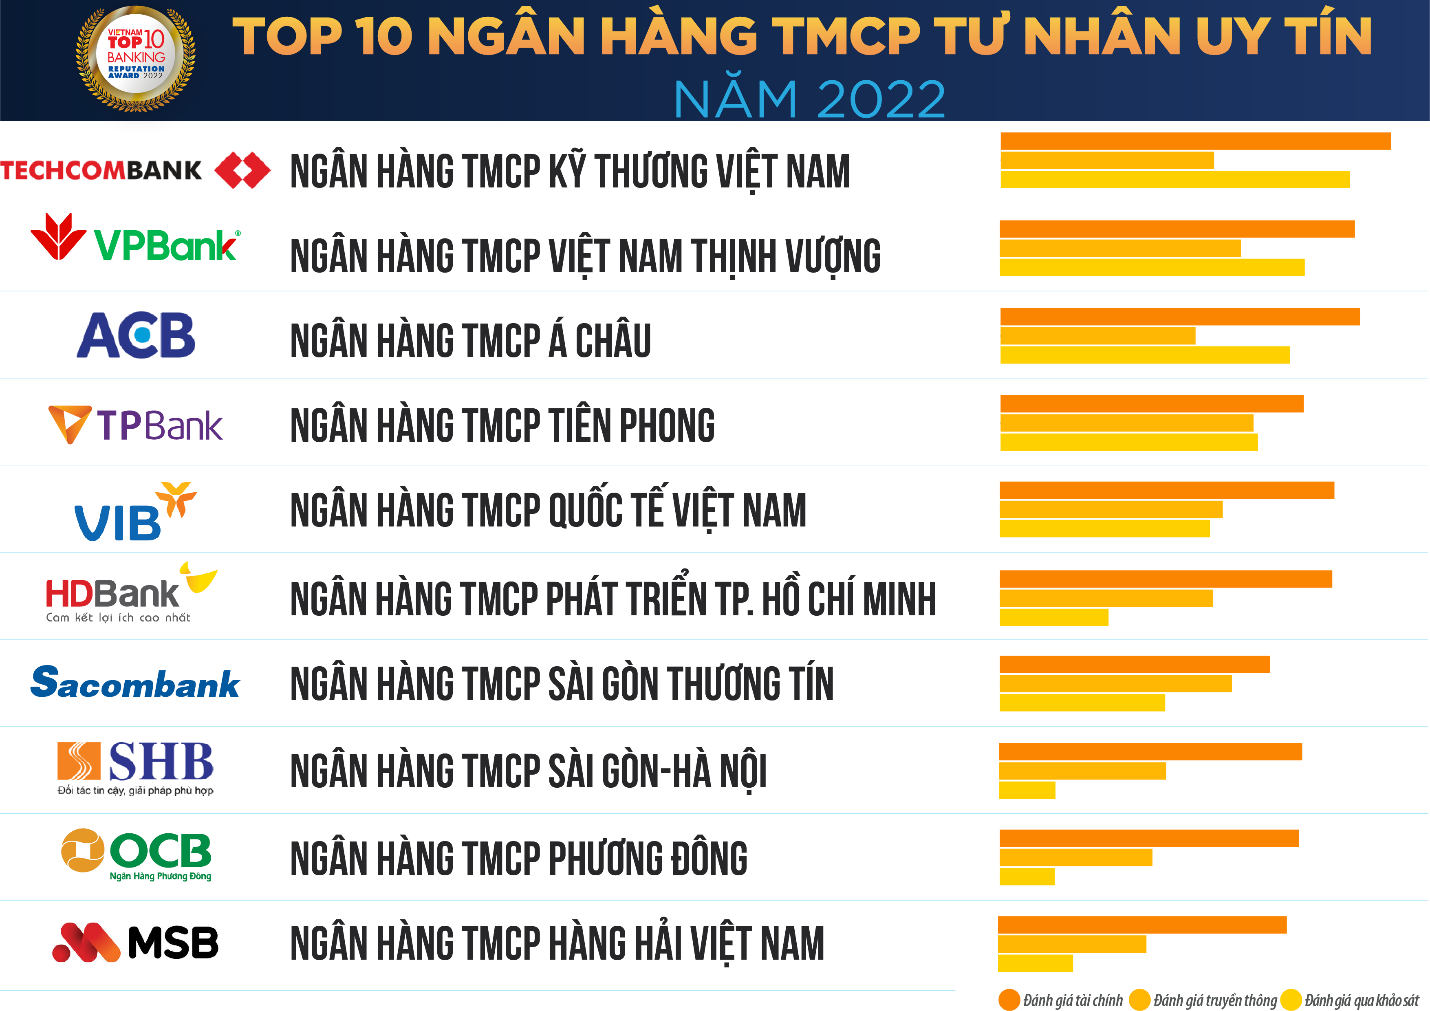 Chi Nhánh, Phòng Giao Dịch Vietcombank ở Hà Nội & HCM